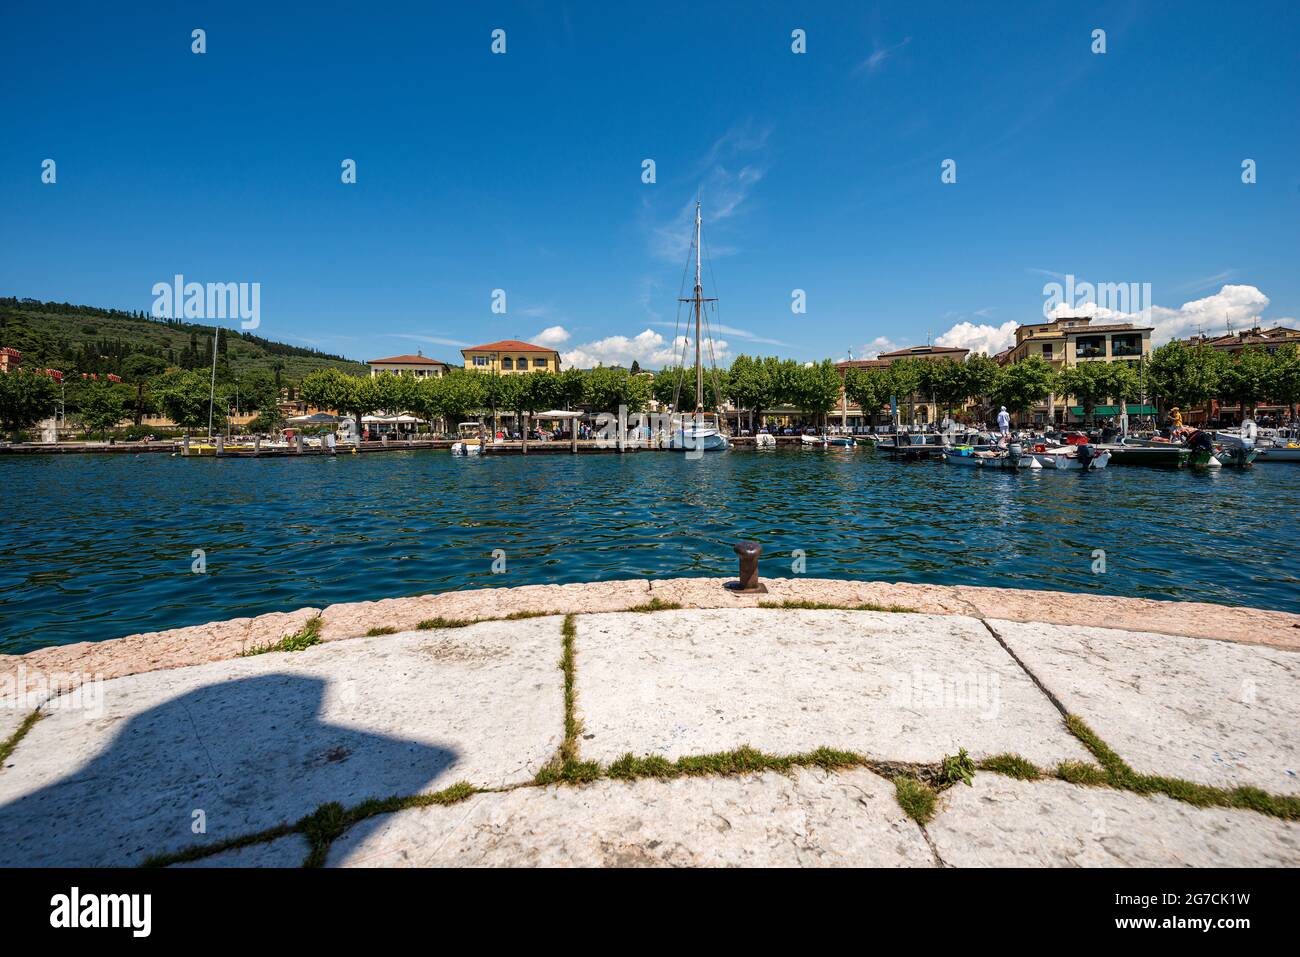 Petit port de la ville de Garda avec de petits bateaux amarrés, station touristique sur la côte du lac de Garde (Lago di Garda). Province de Vérone, Vénétie, Italie, Europe. Banque D'Images